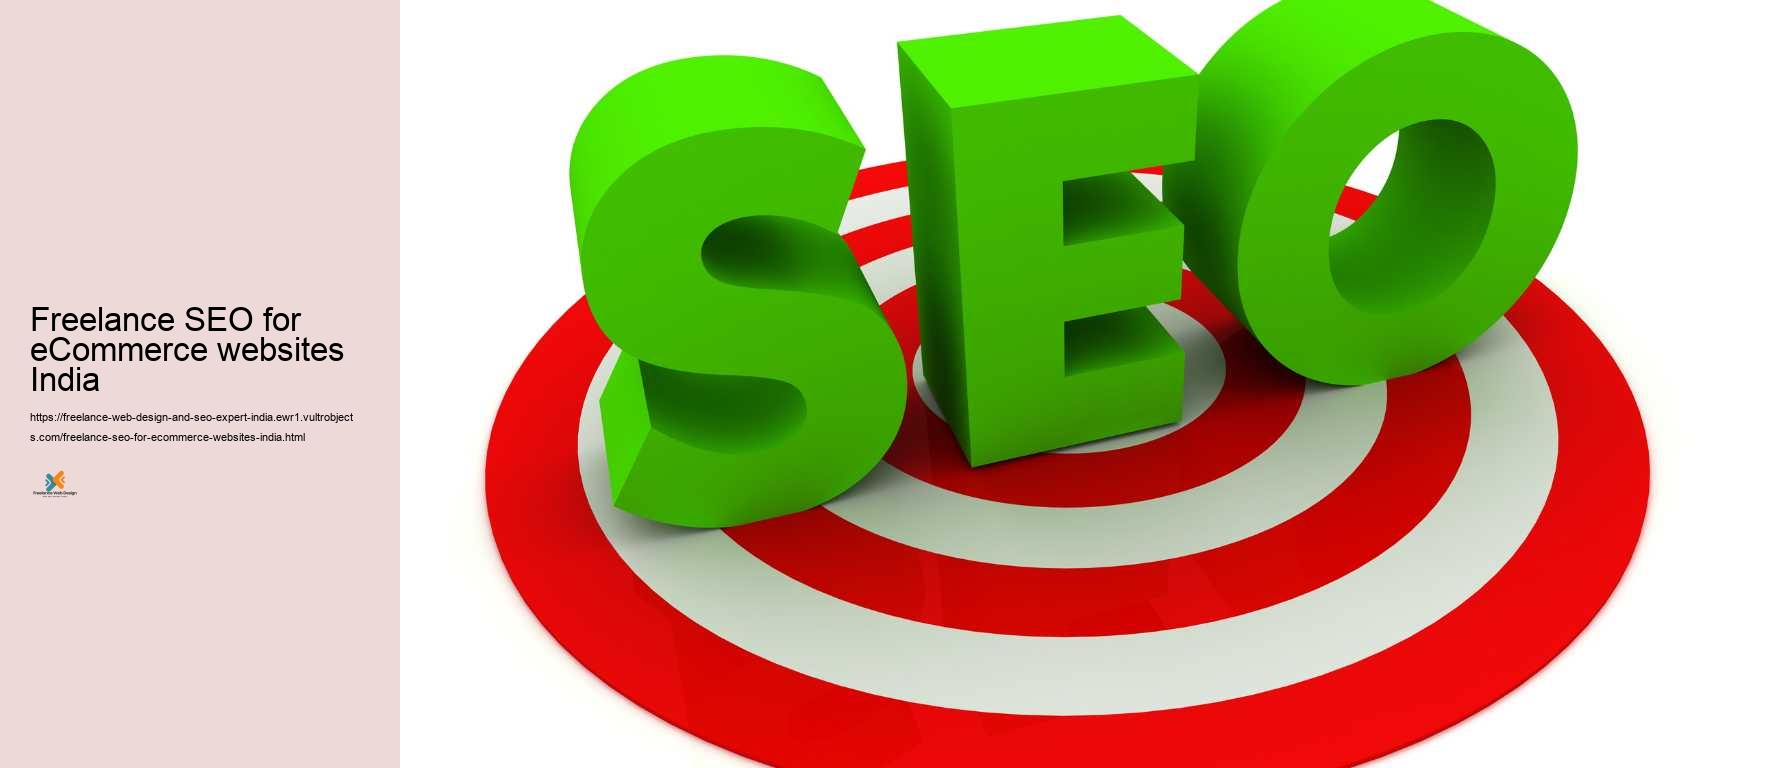 Freelance SEO for eCommerce websites India